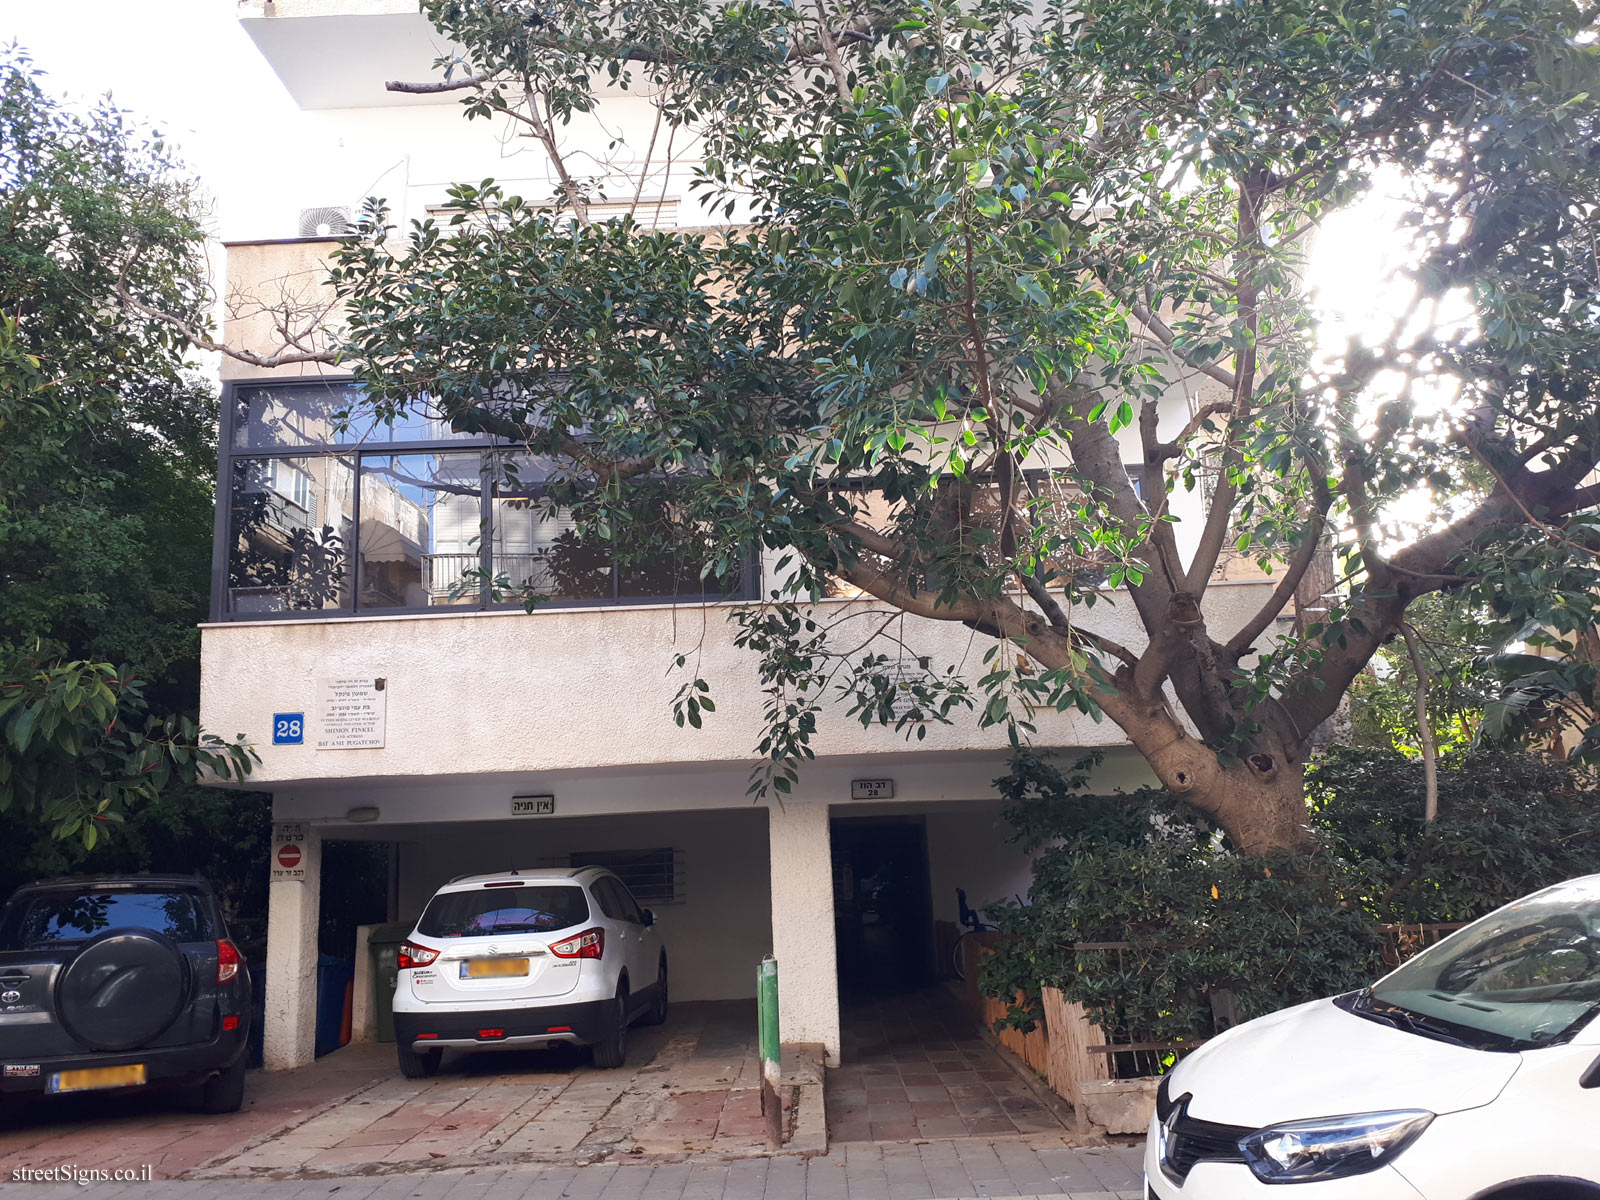 The house of  Shimon Finkel & Bat Ami Pugatchov - Dov Hoz St 28, Tel Aviv-Yafo, Israel